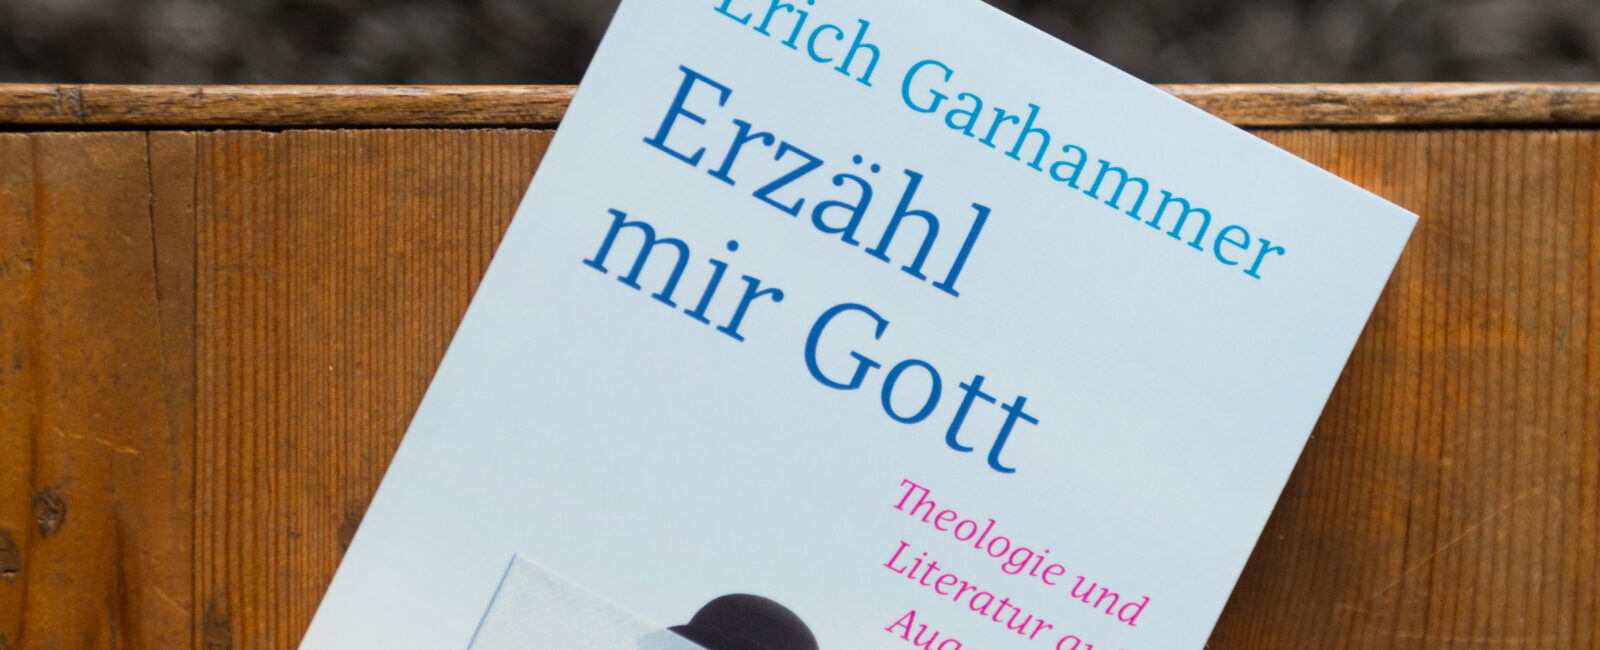 Produktbild Buch Erzähl mir Gott von Erich Garhammer